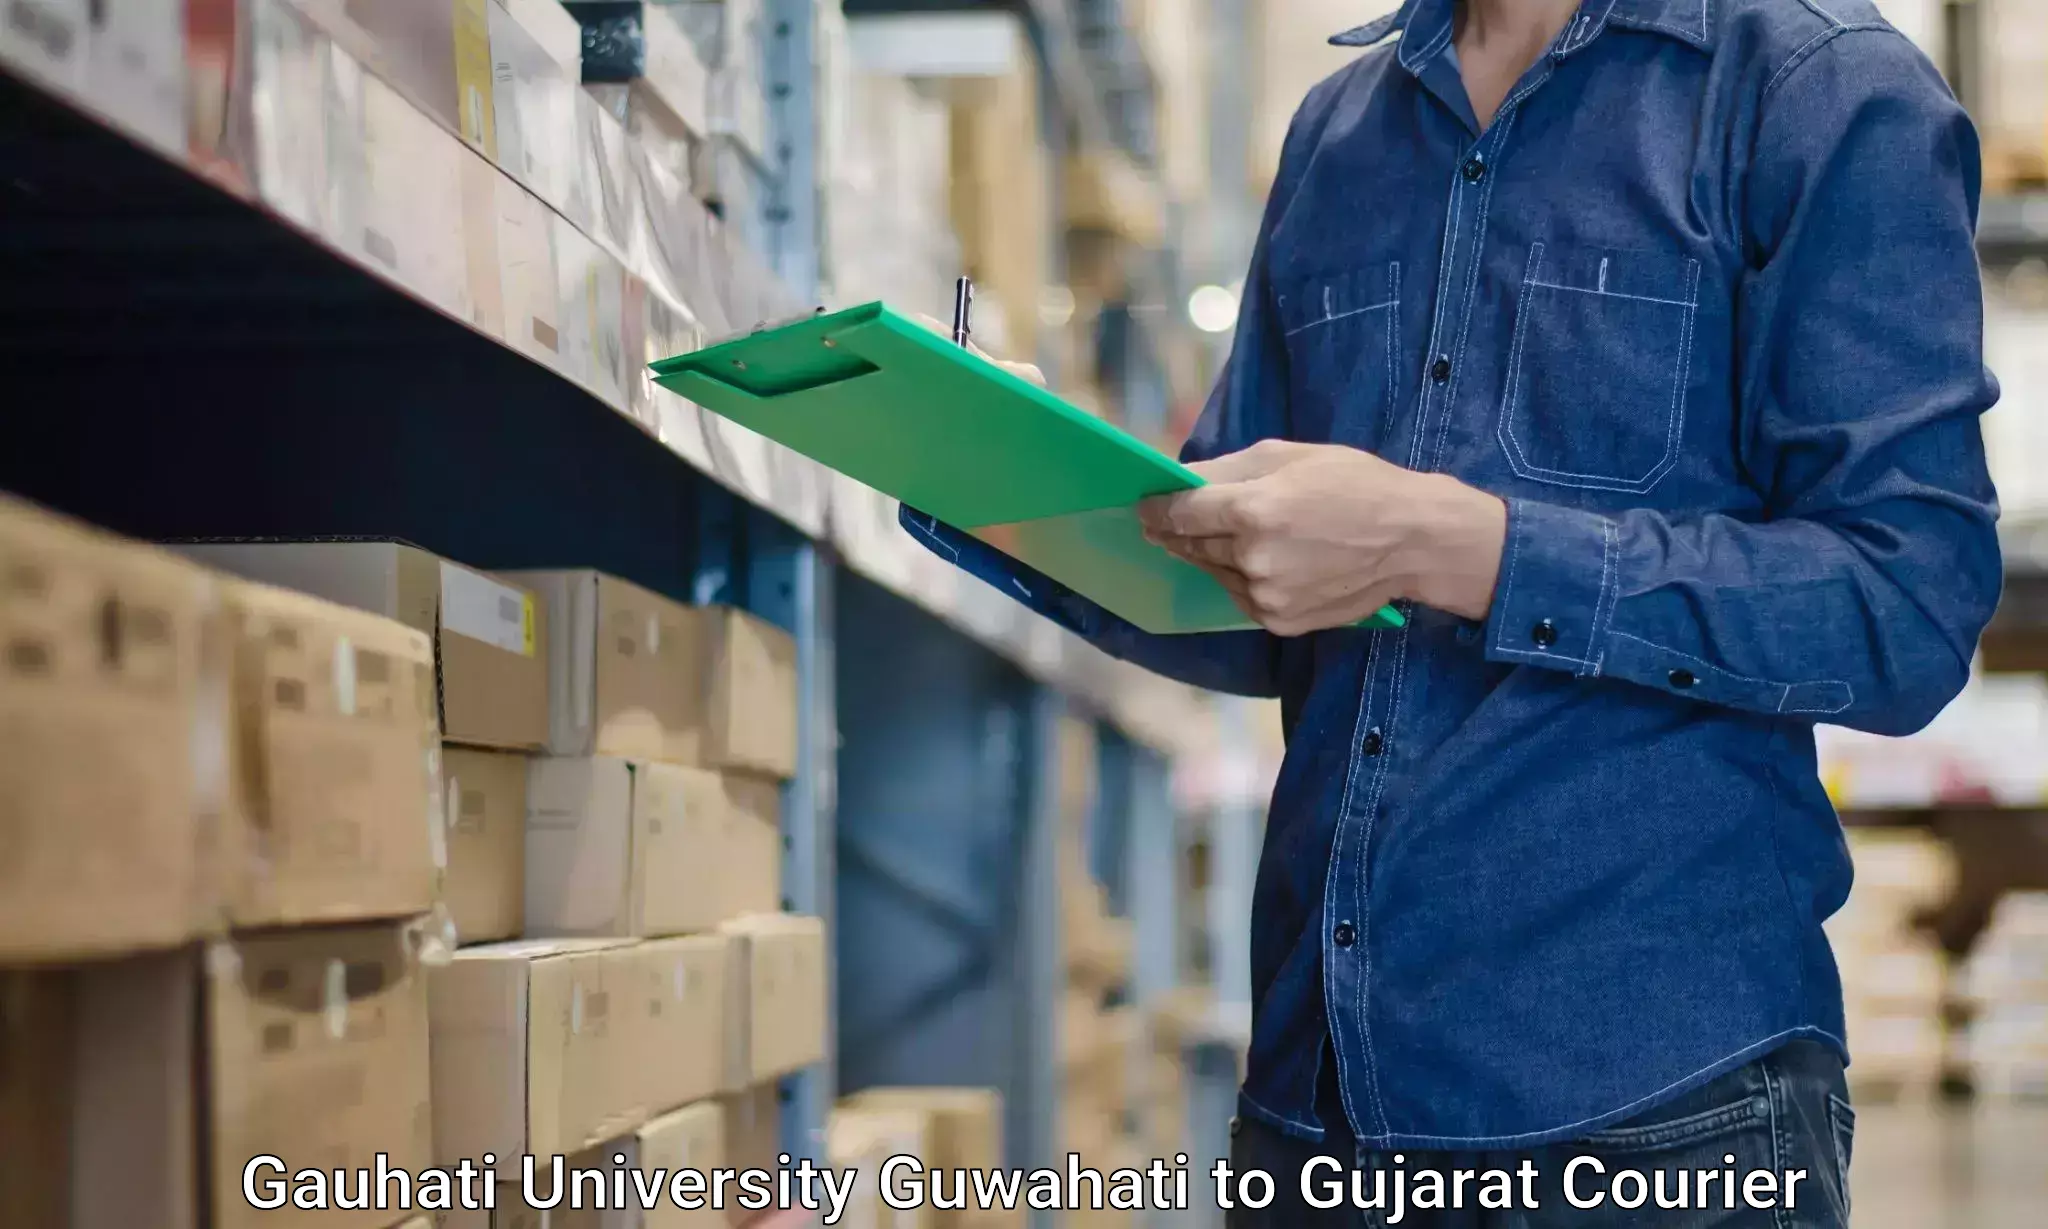 Furniture transport experts Gauhati University Guwahati to Surat